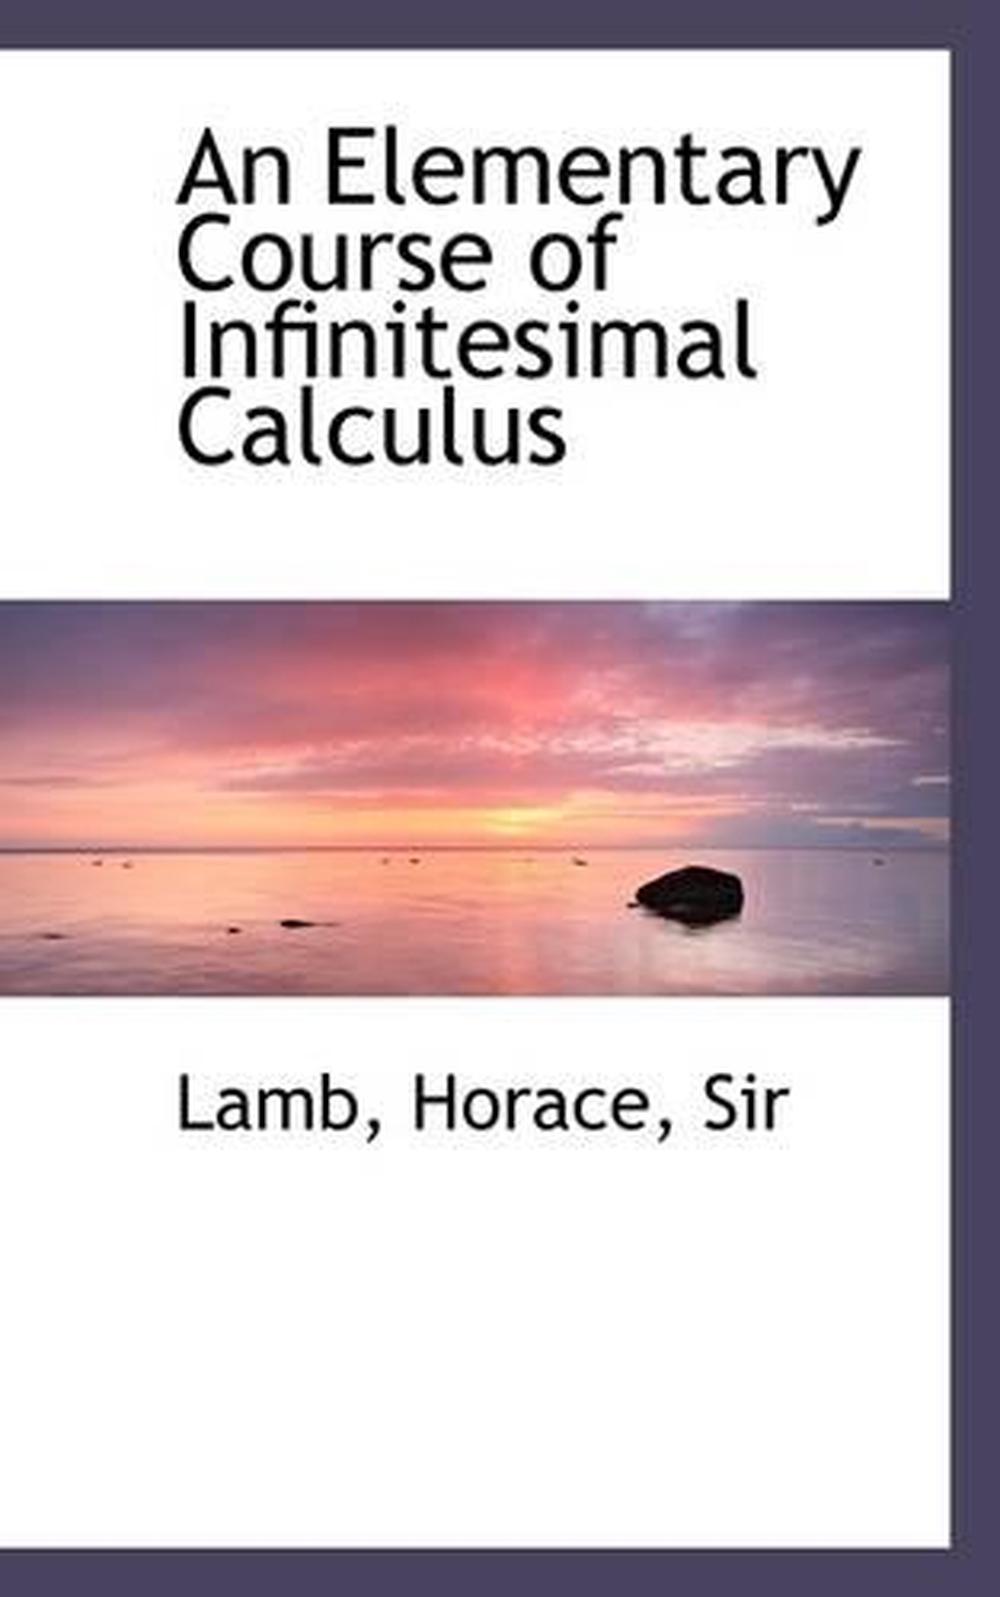 history of infinitesimals